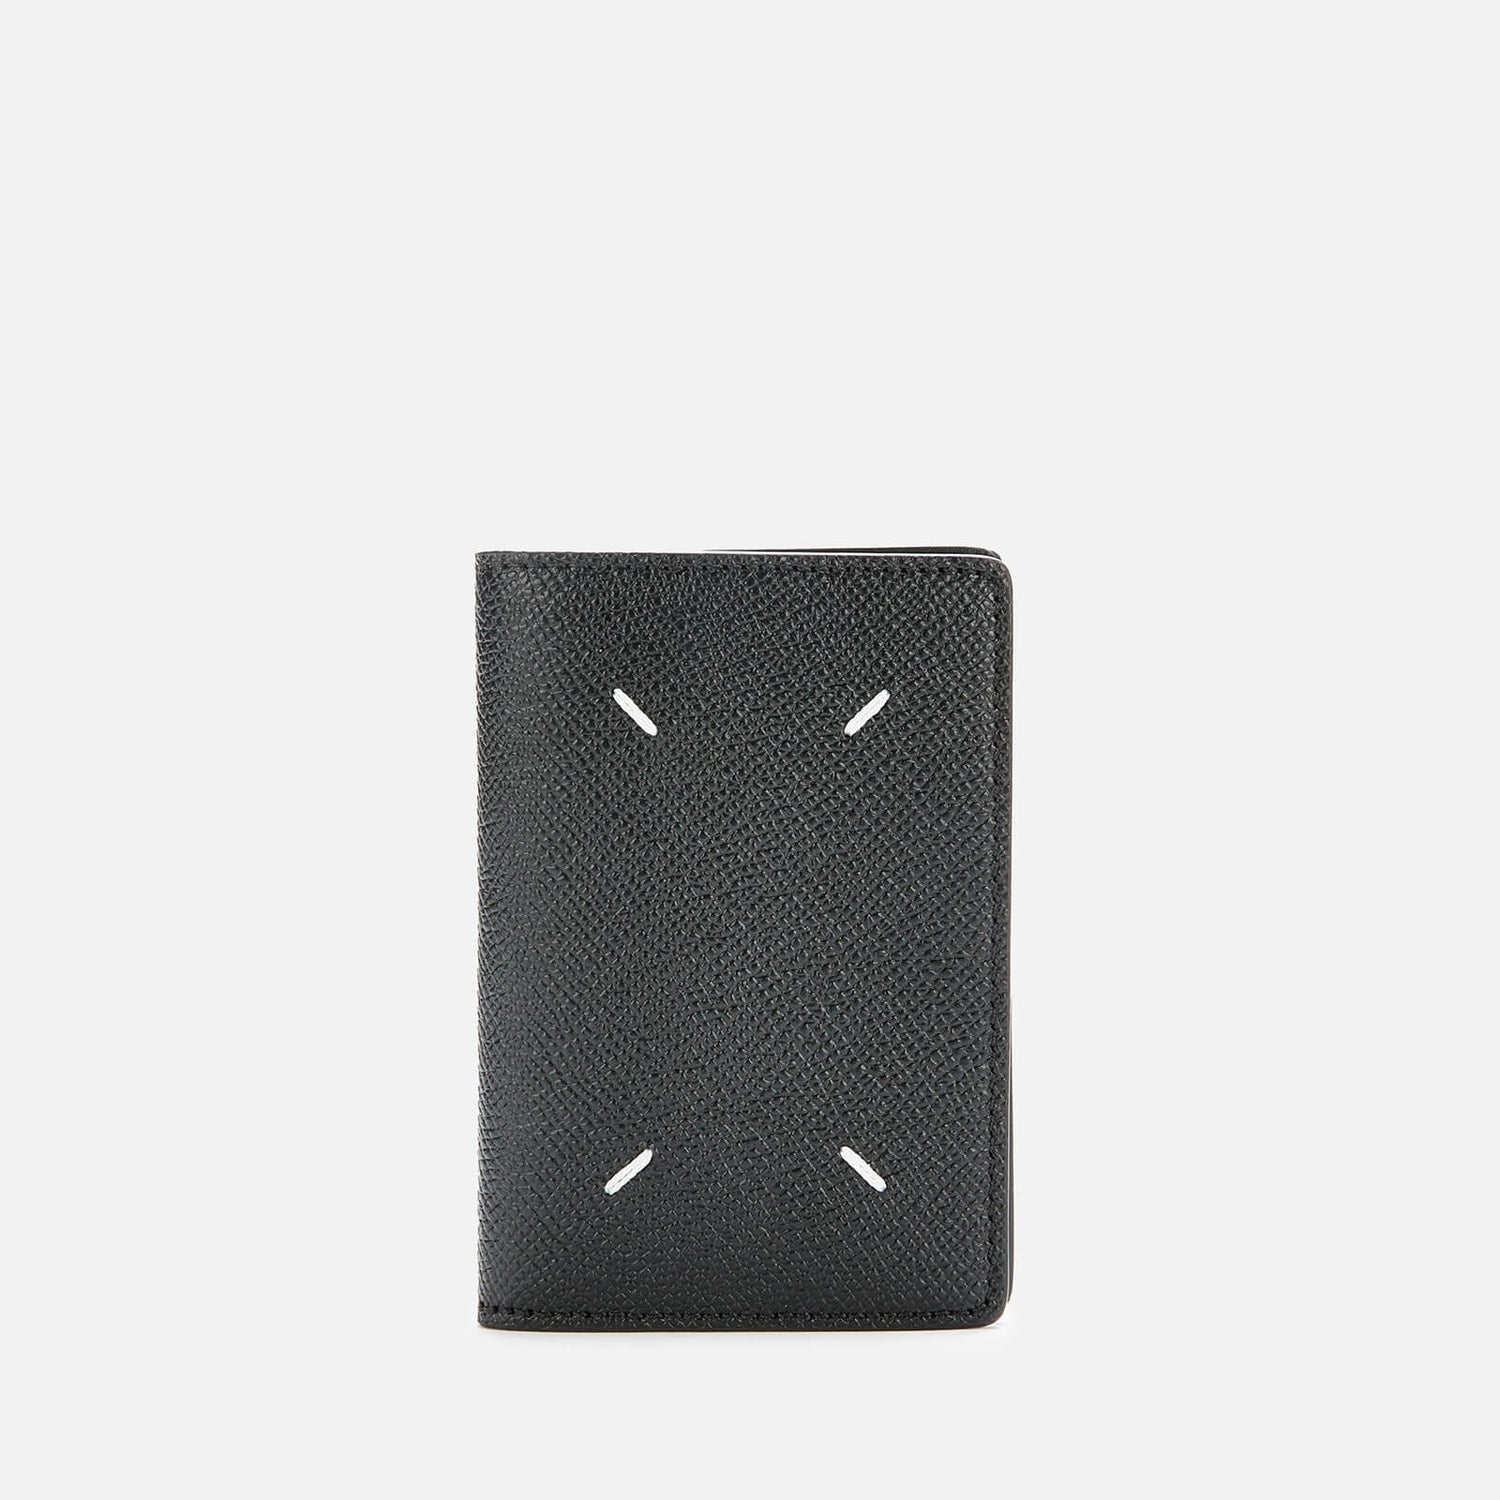 Maison Margiela Women's Card Wallet - Black